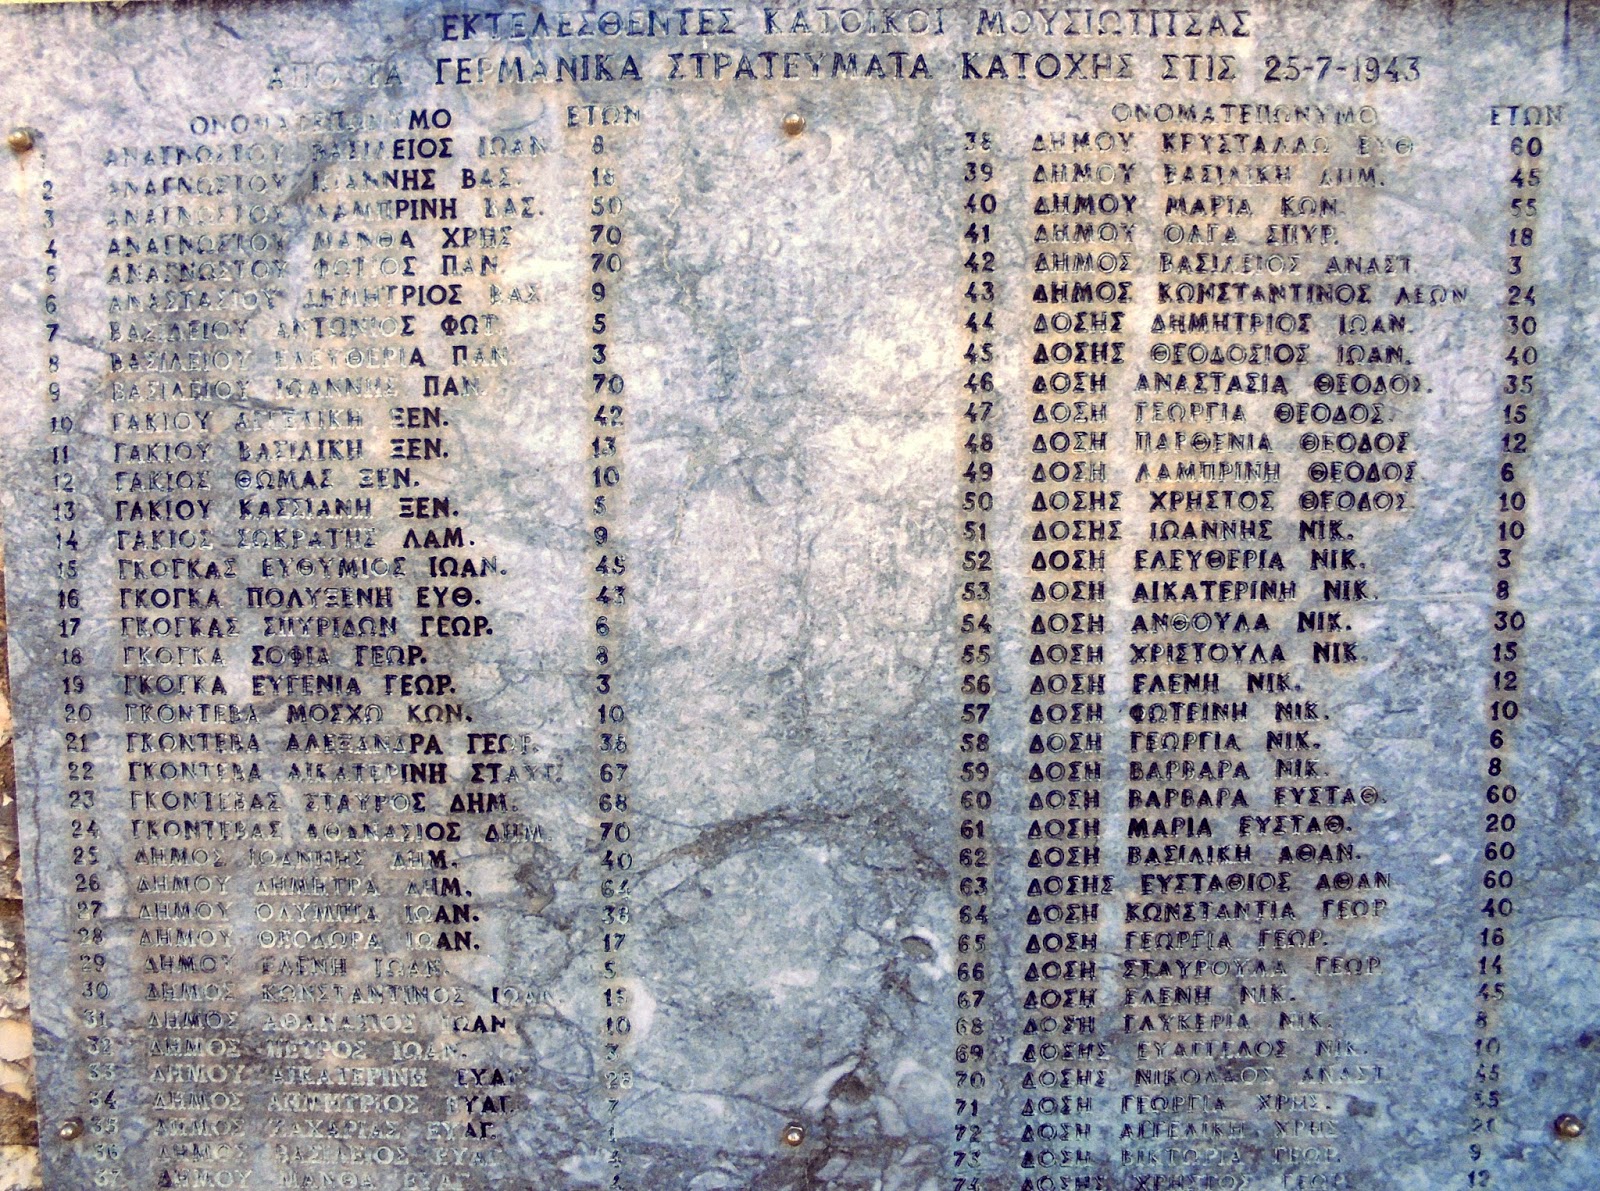 το μνημείο του Ολοκαυτώματος στην Κάτω Μουσιωτίτσα των Ιωαννίνων